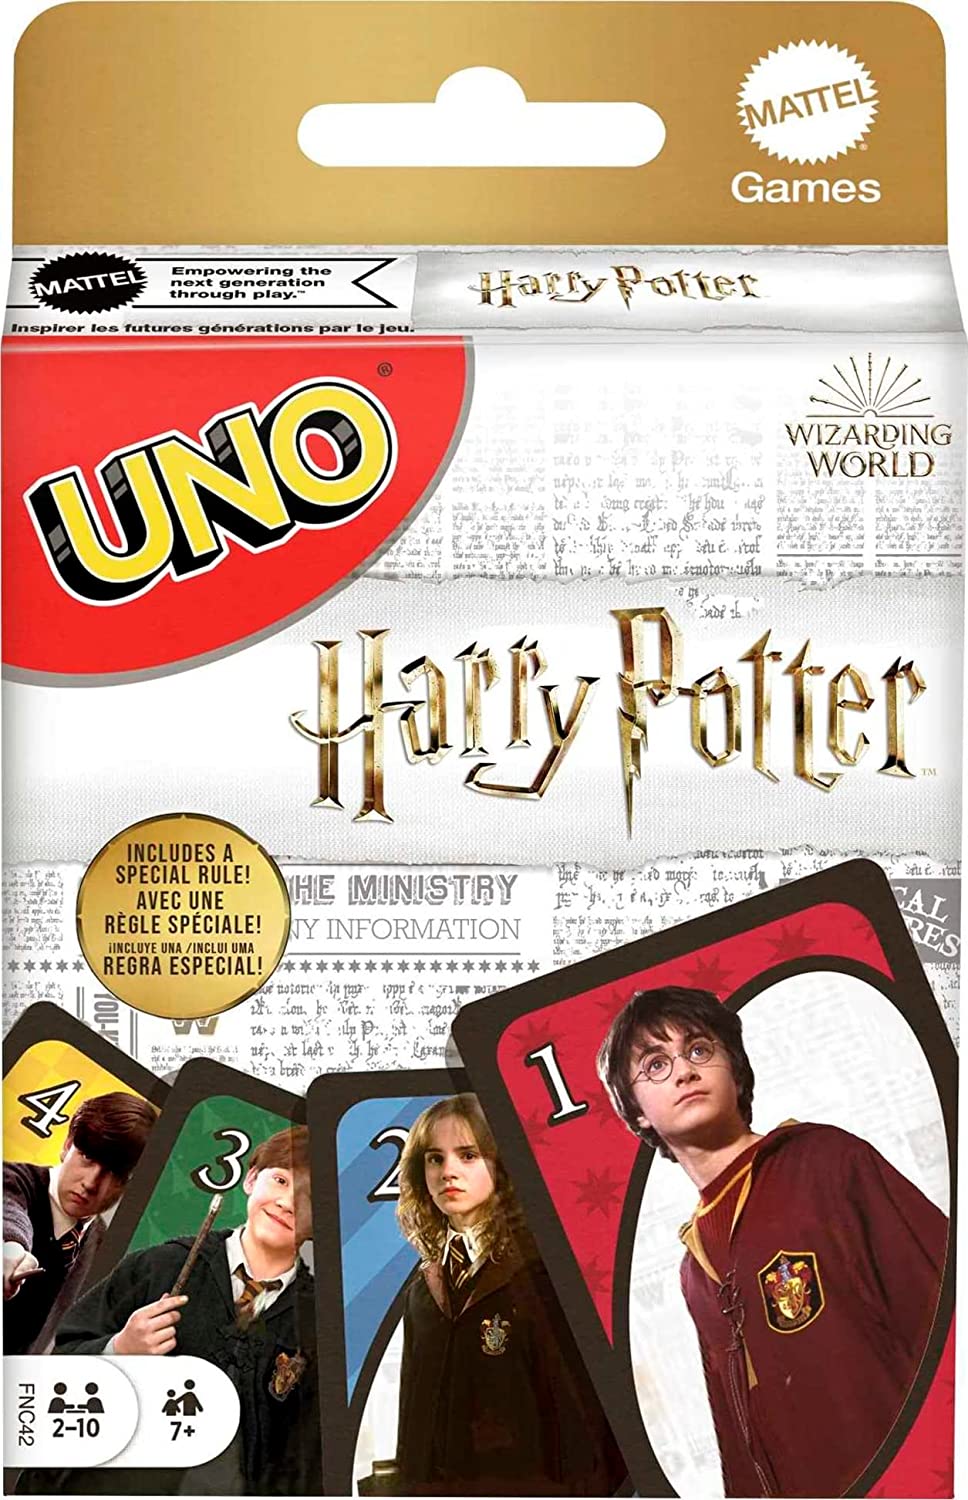 Jeu de 52 Cartes Harry Potter avec boîte métallique